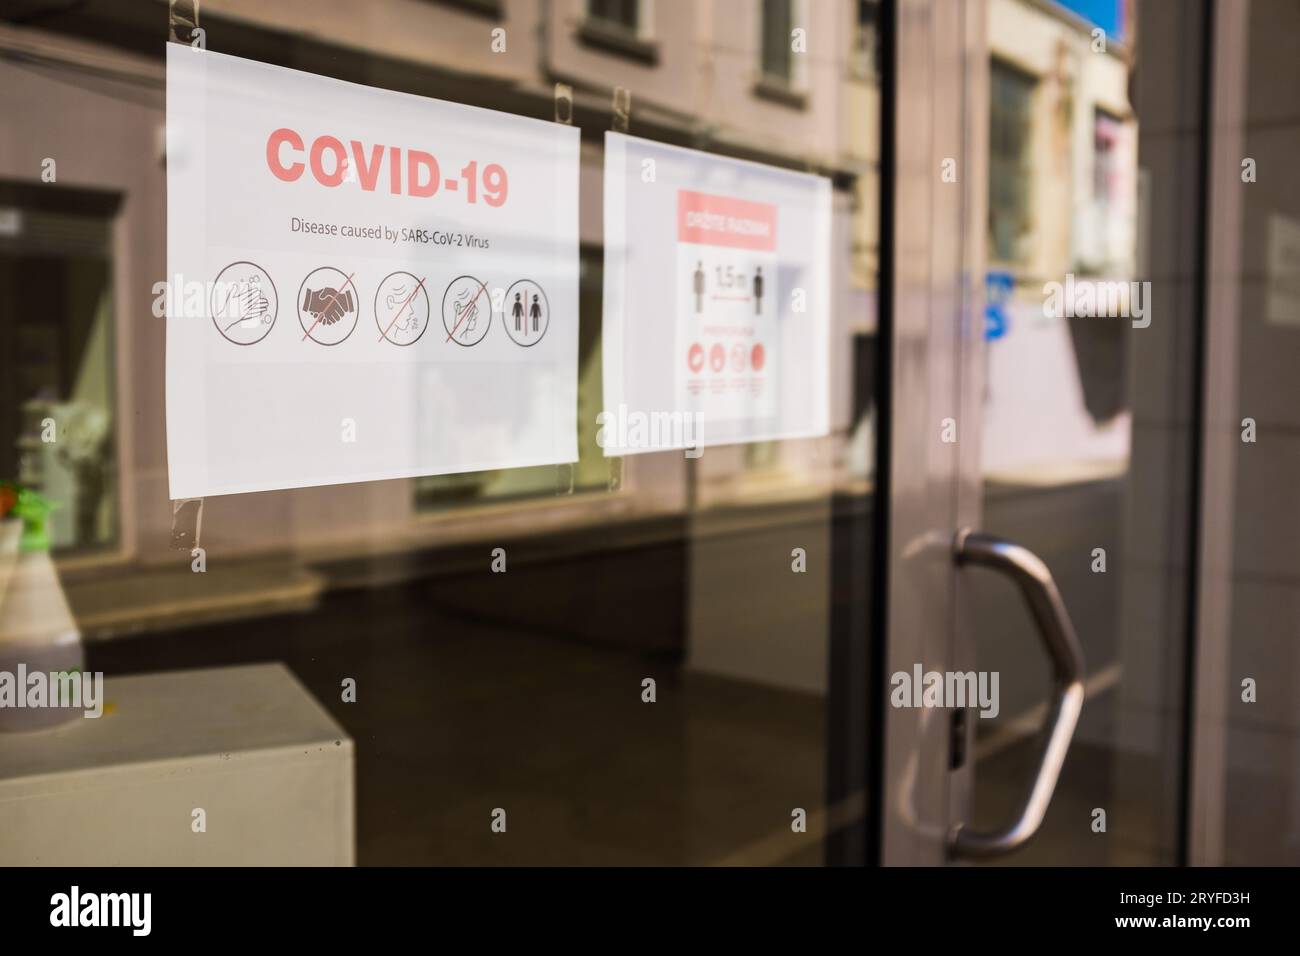 Le regole e le normative COVID-19 sono riportate sulla finestra del negozio Foto Stock